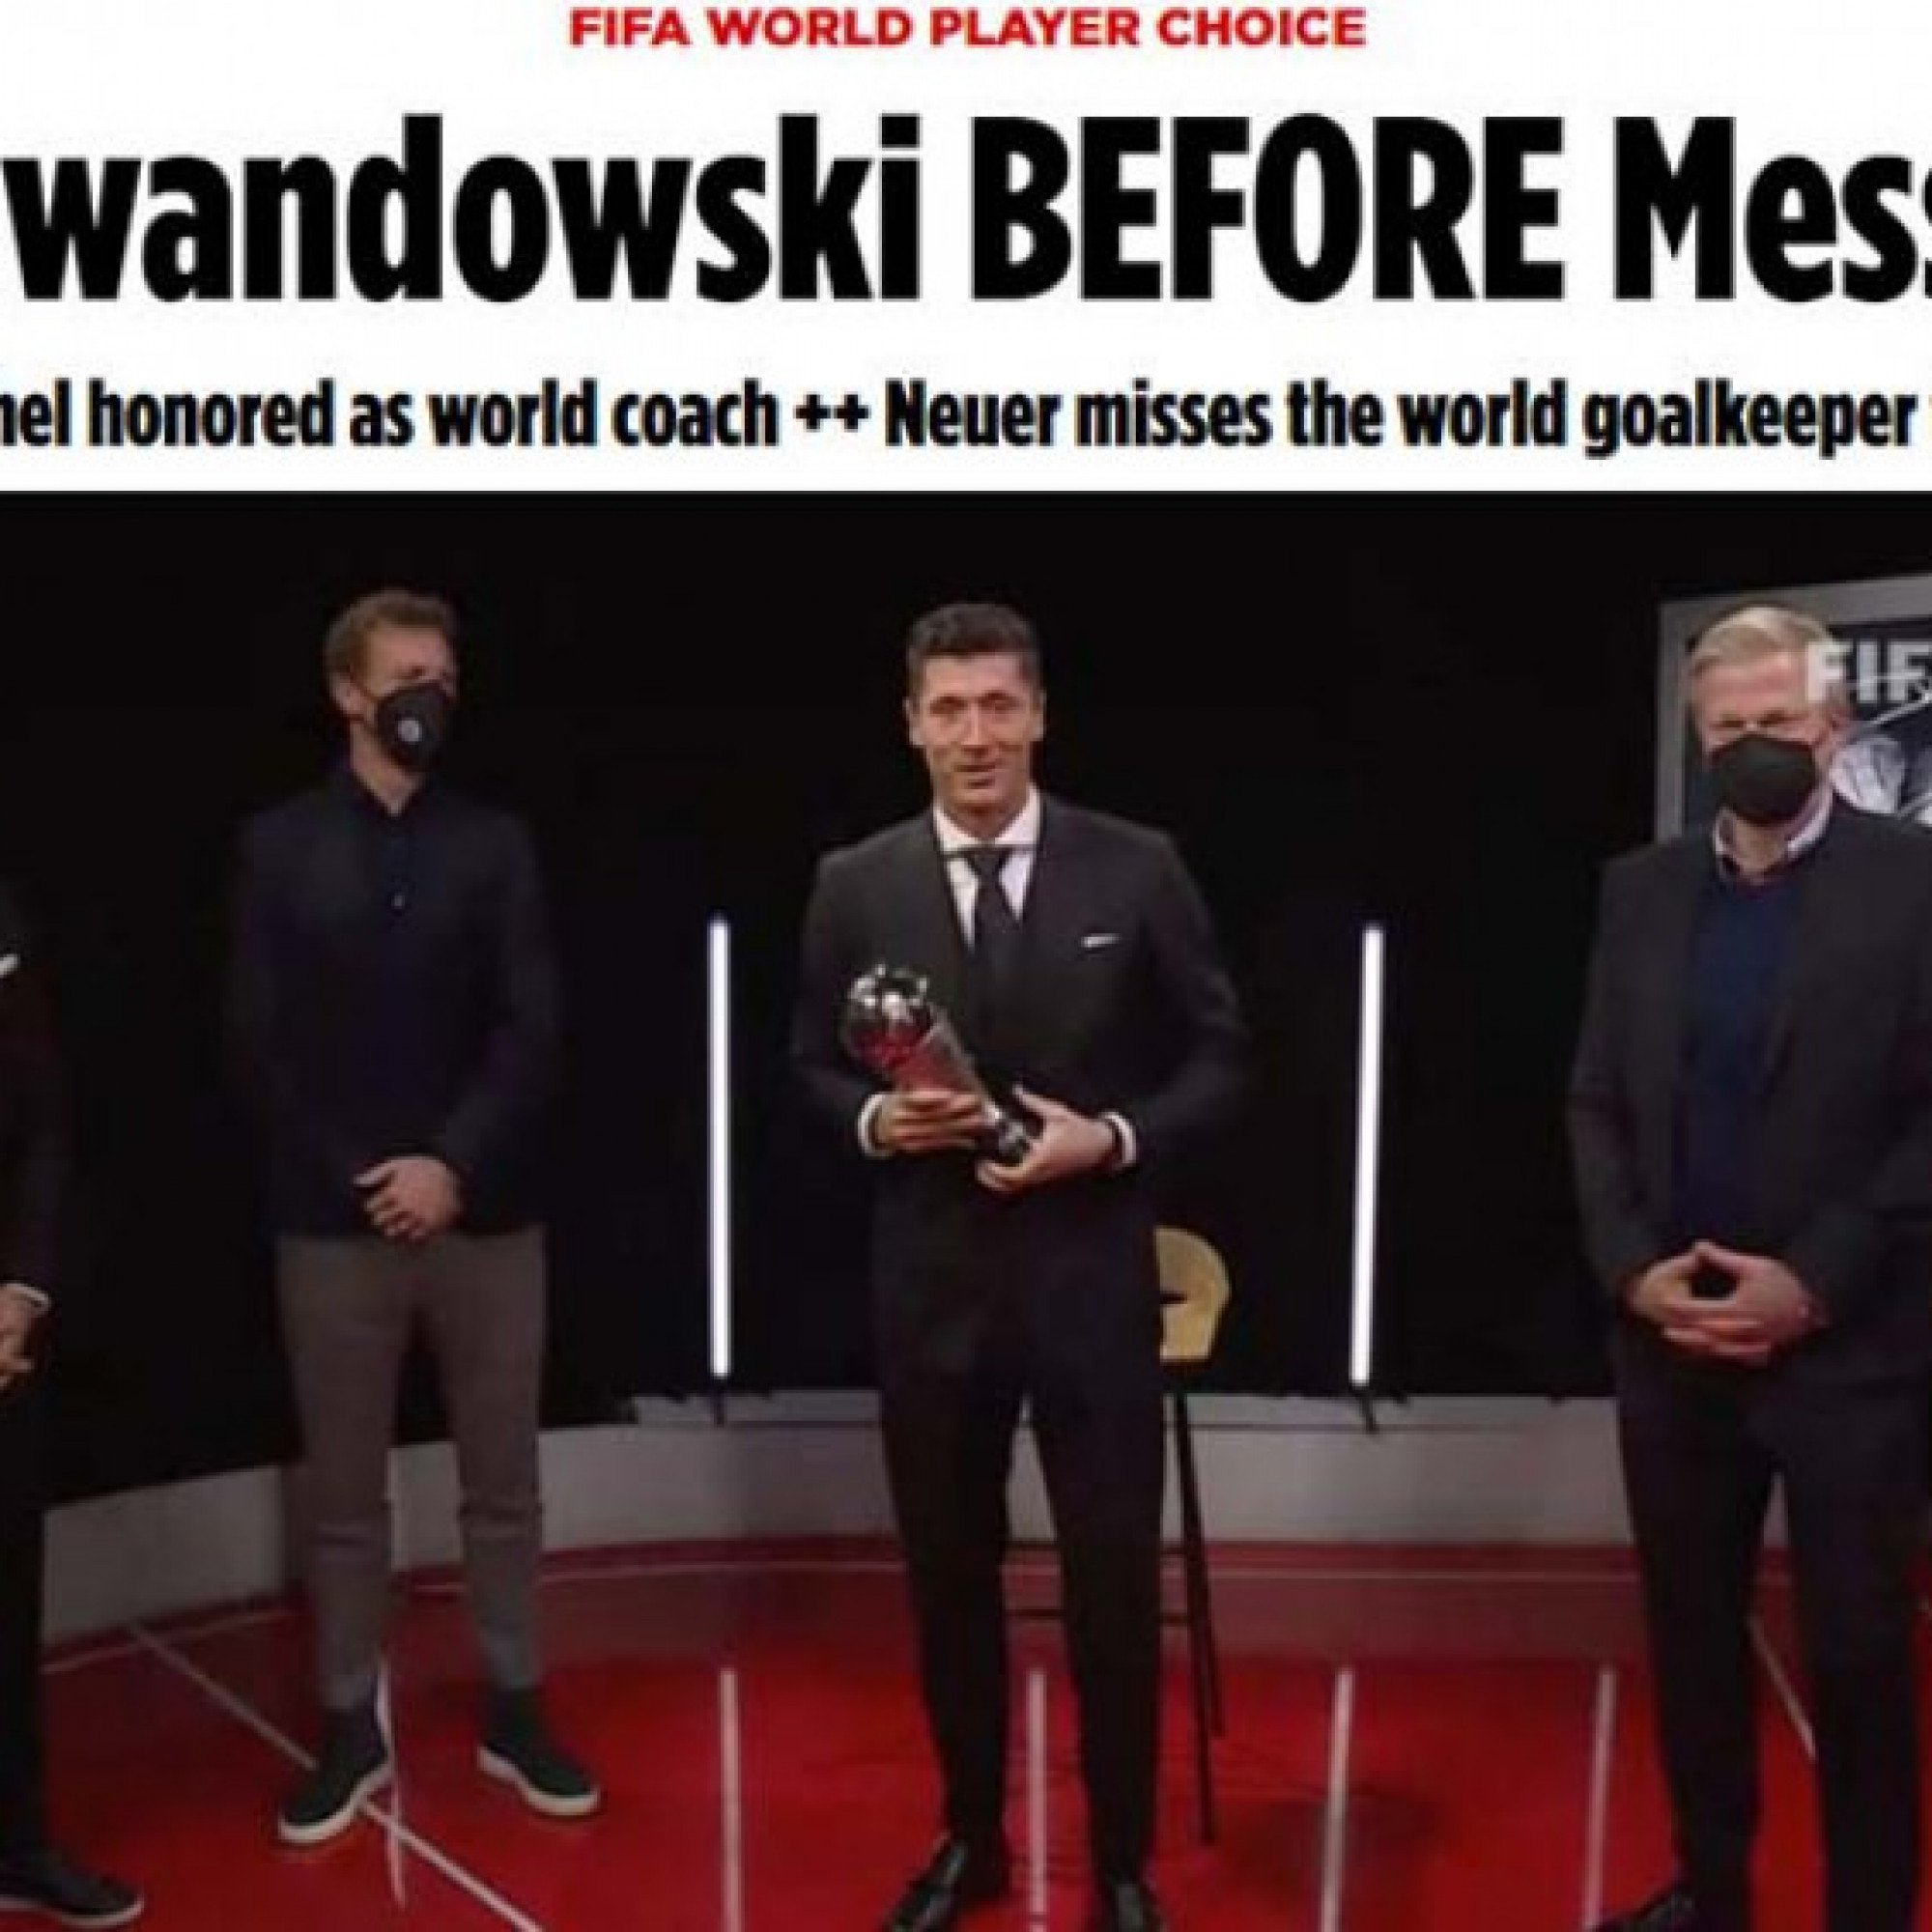  - Báo châu Âu hả hê vì Messi trượt giải The Best, tôn vinh "Vua" Lewandowski